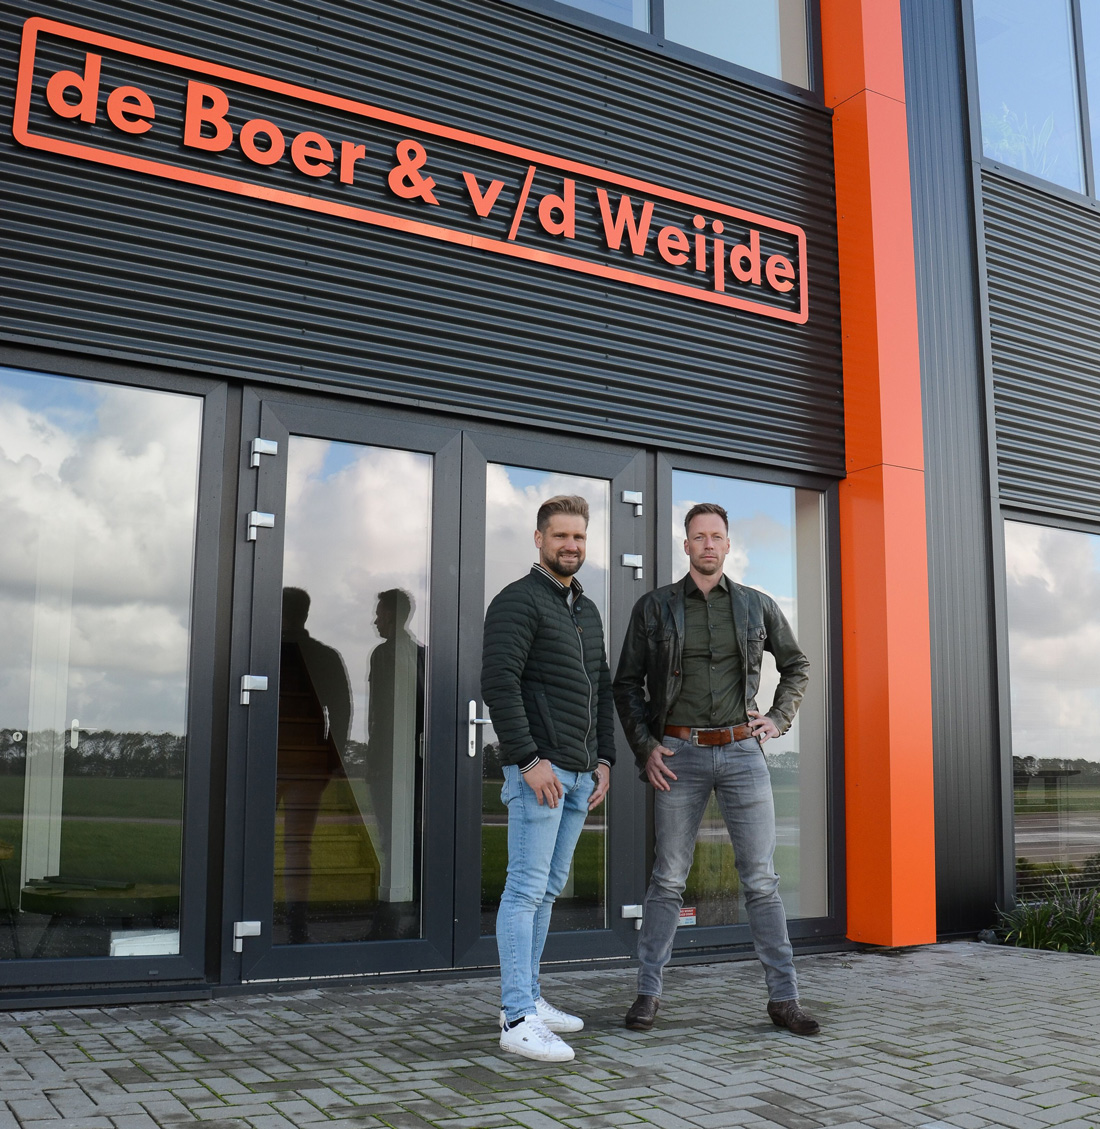 Theo de Boer & Jasper van der Weijde